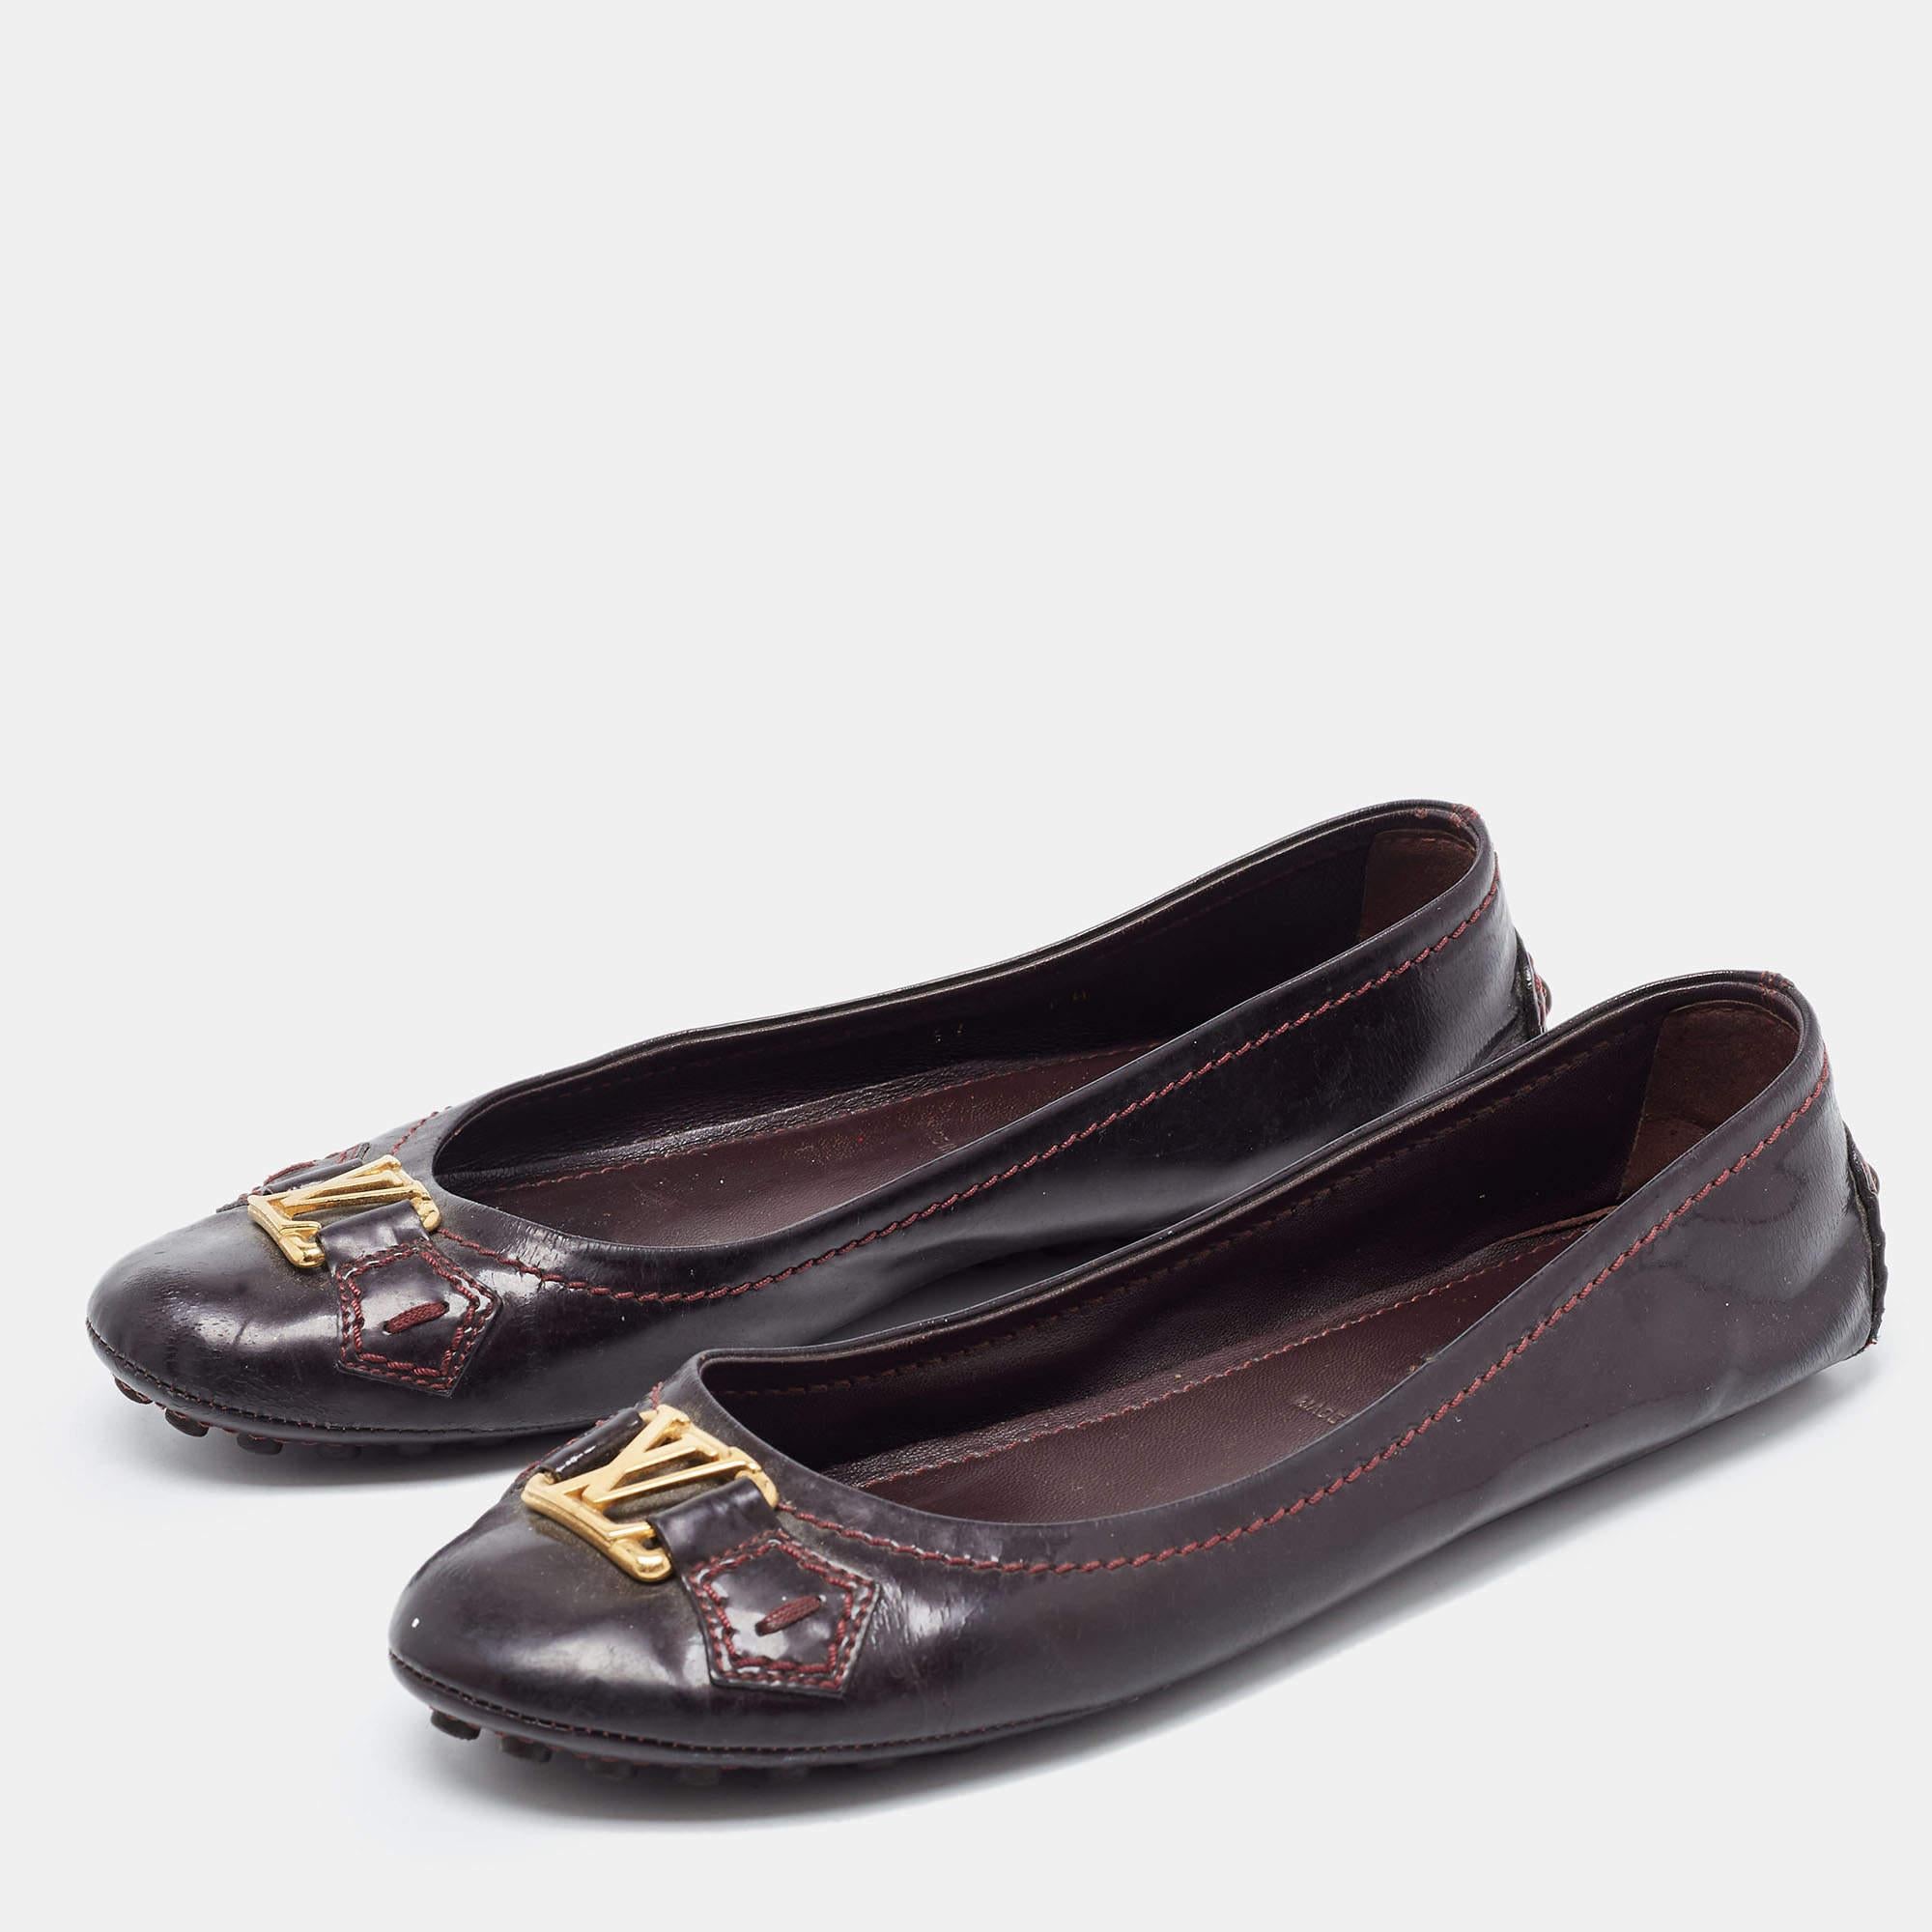 Mit diesen Loafers von Louis Vuitton genießen Sie Komfort und mühelosen Stil. Die aus bordeauxfarbenem Lackleder gefertigten Loafer zeichnen sich durch ein schönes Obermaterial, strapazierfähige Sohlen und eine bequeme Passform aus.

